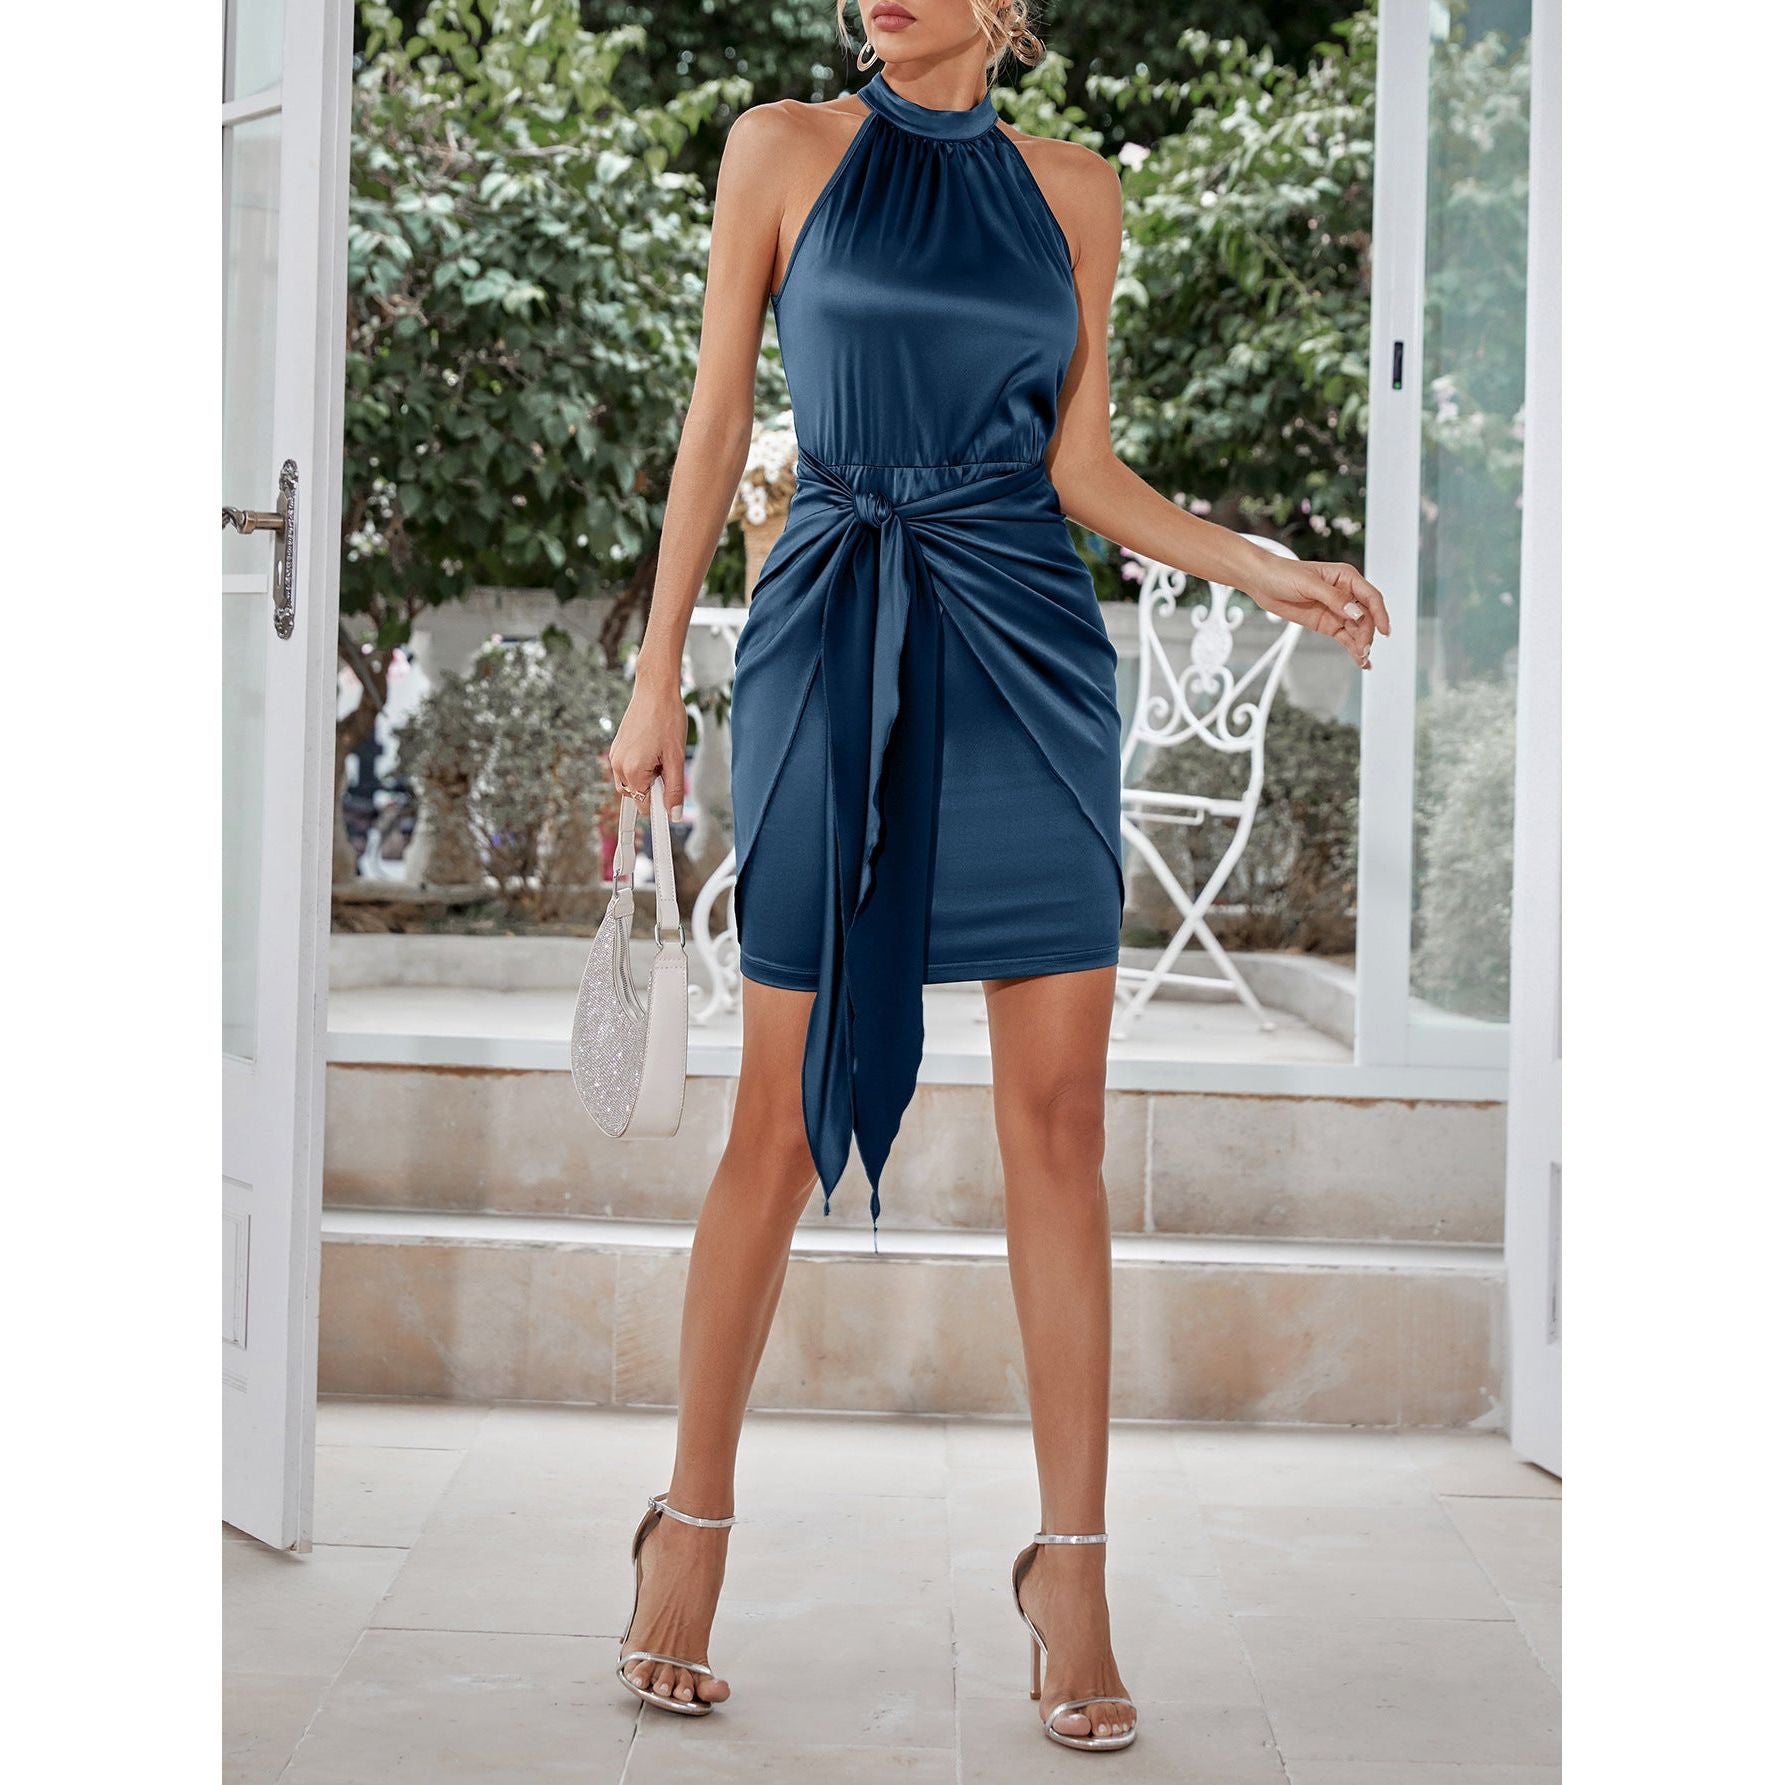 Grecian Neck Tie Front Dress - TiffanyzKlozet